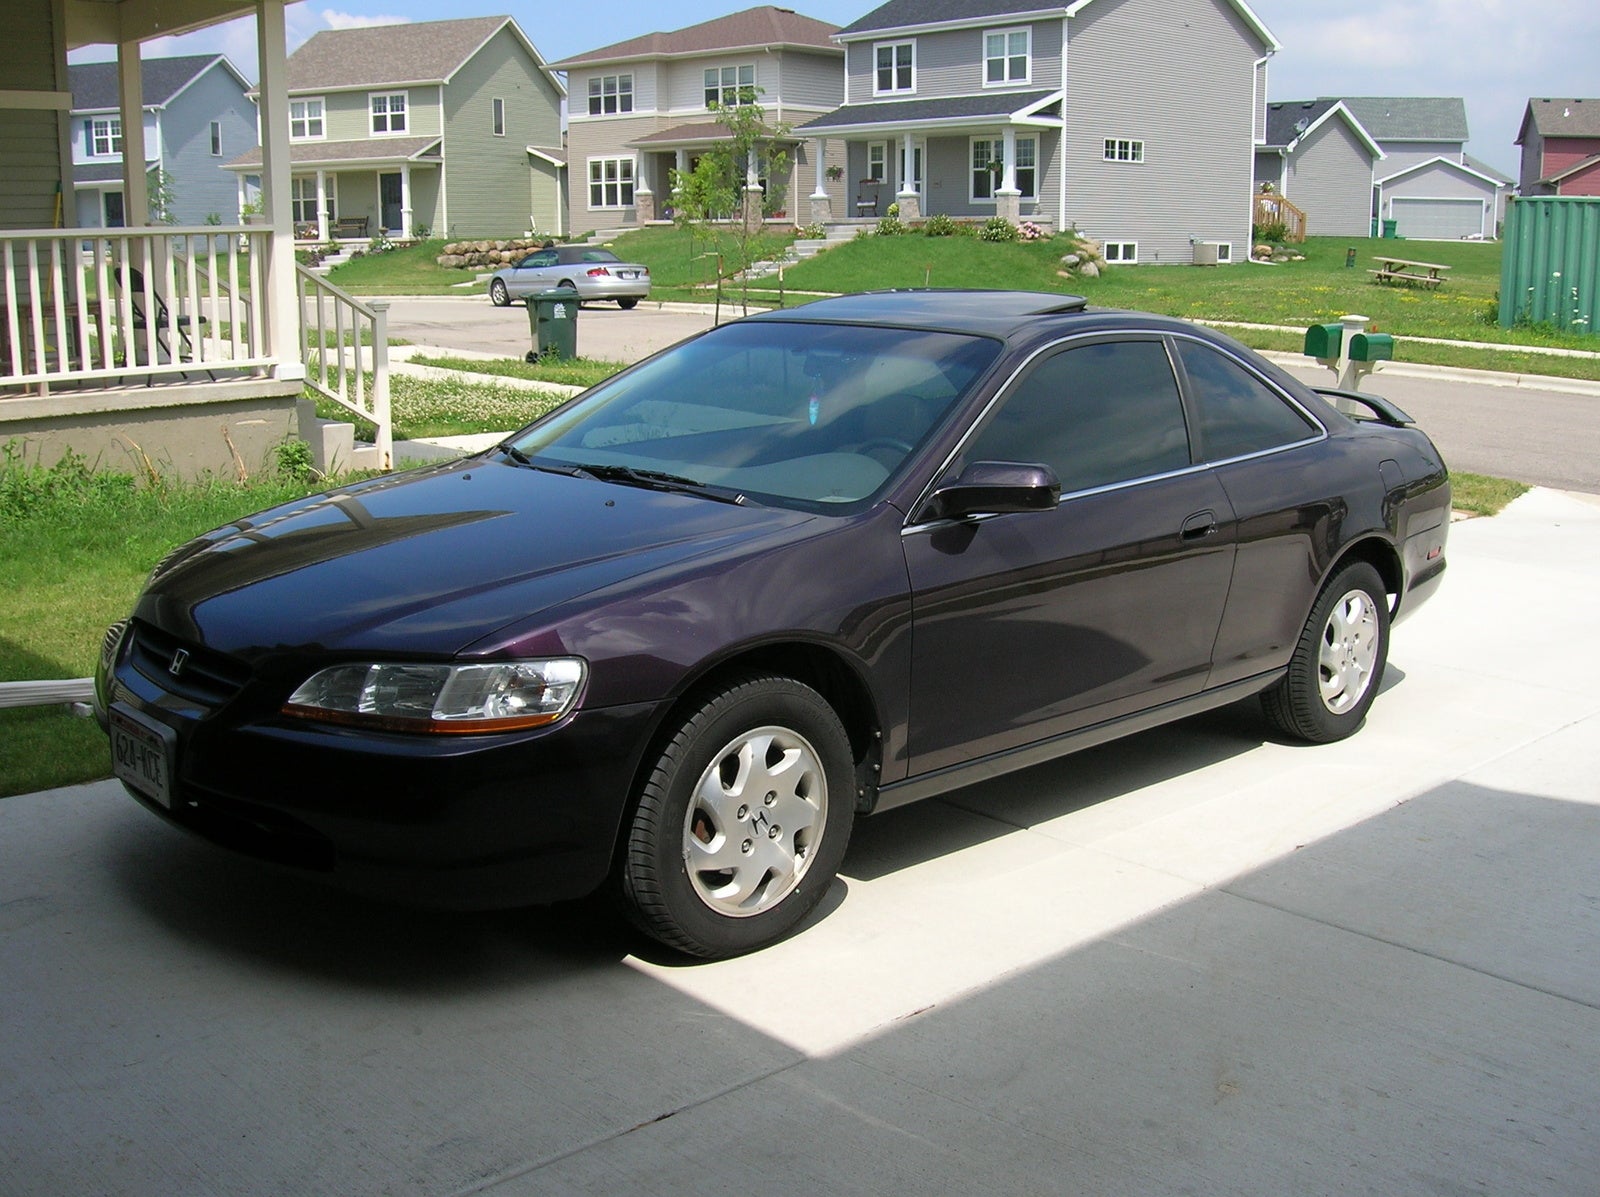 1998 Honda Accord Exterior Pictures CarGurus